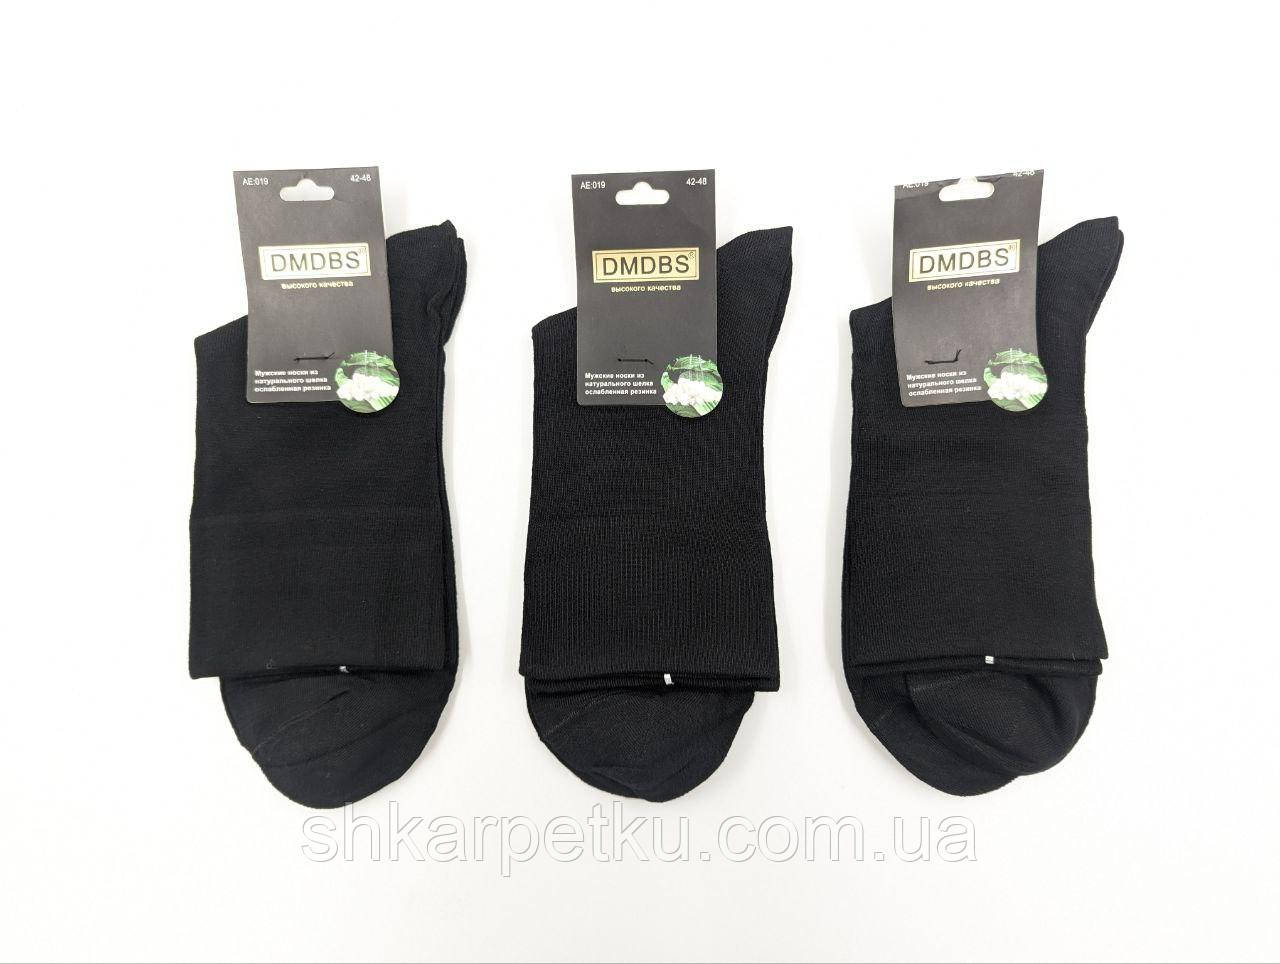 Чоловічі шкарпетки Без Резинки, DMDBS шовк, високі розмір 42-48 10 пар/уп чорні